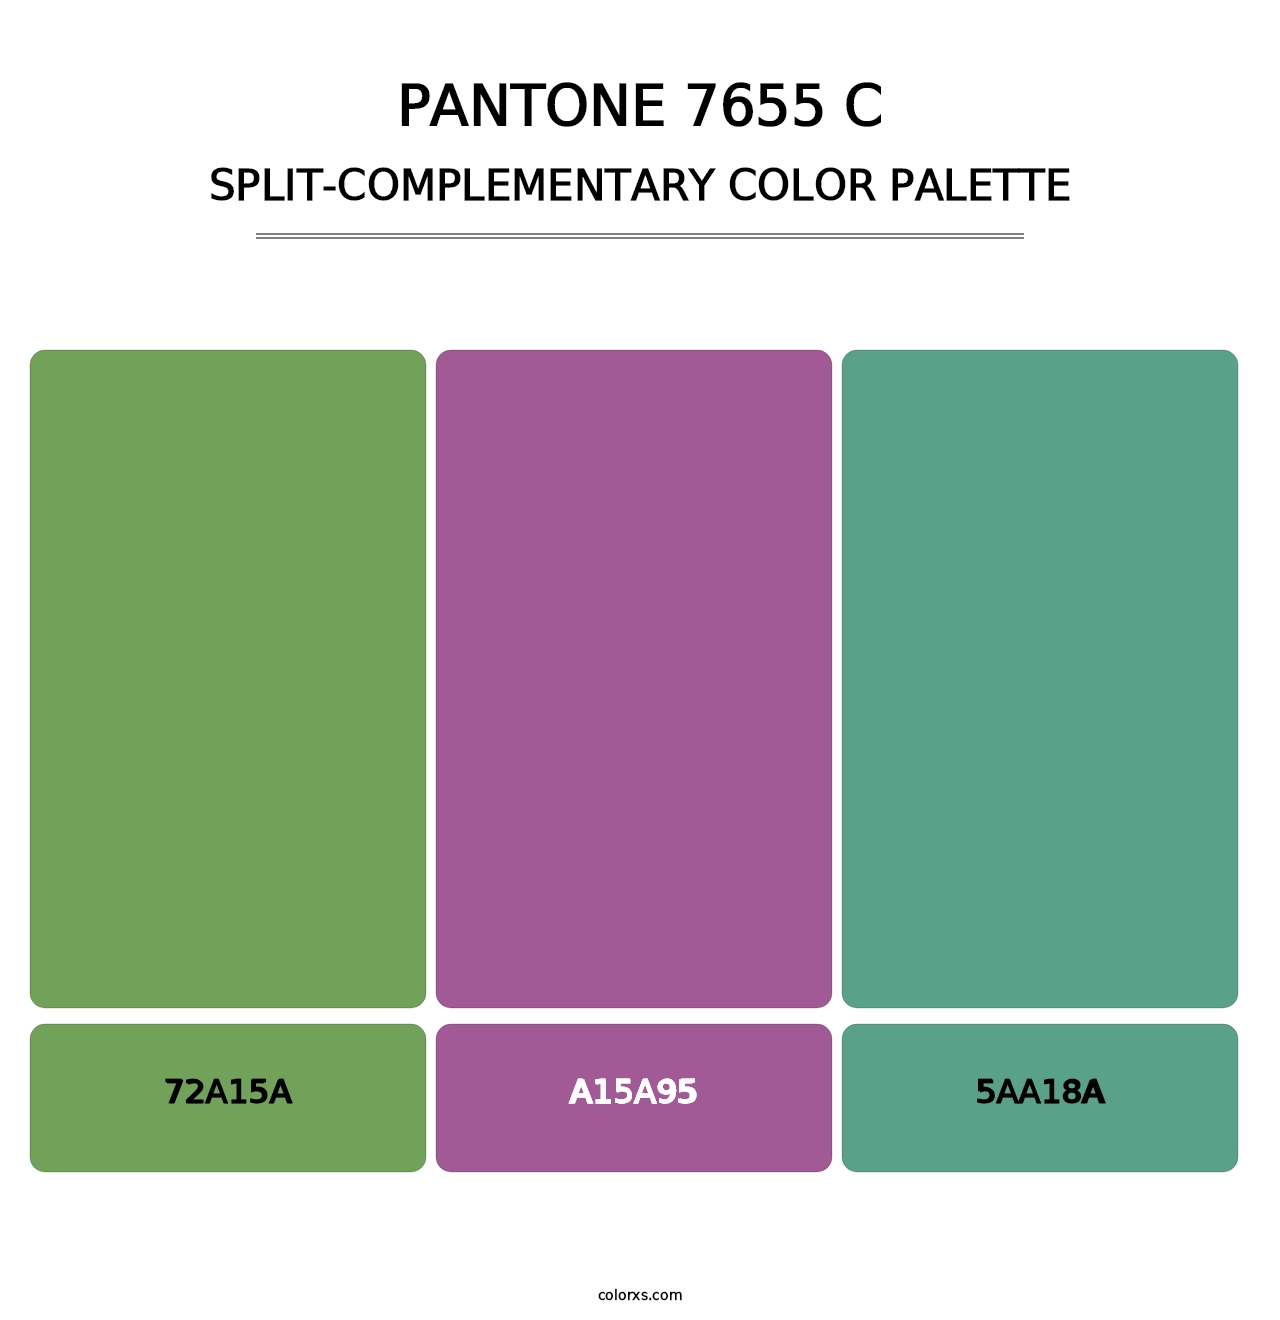 PANTONE 7655 C - Split-Complementary Color Palette